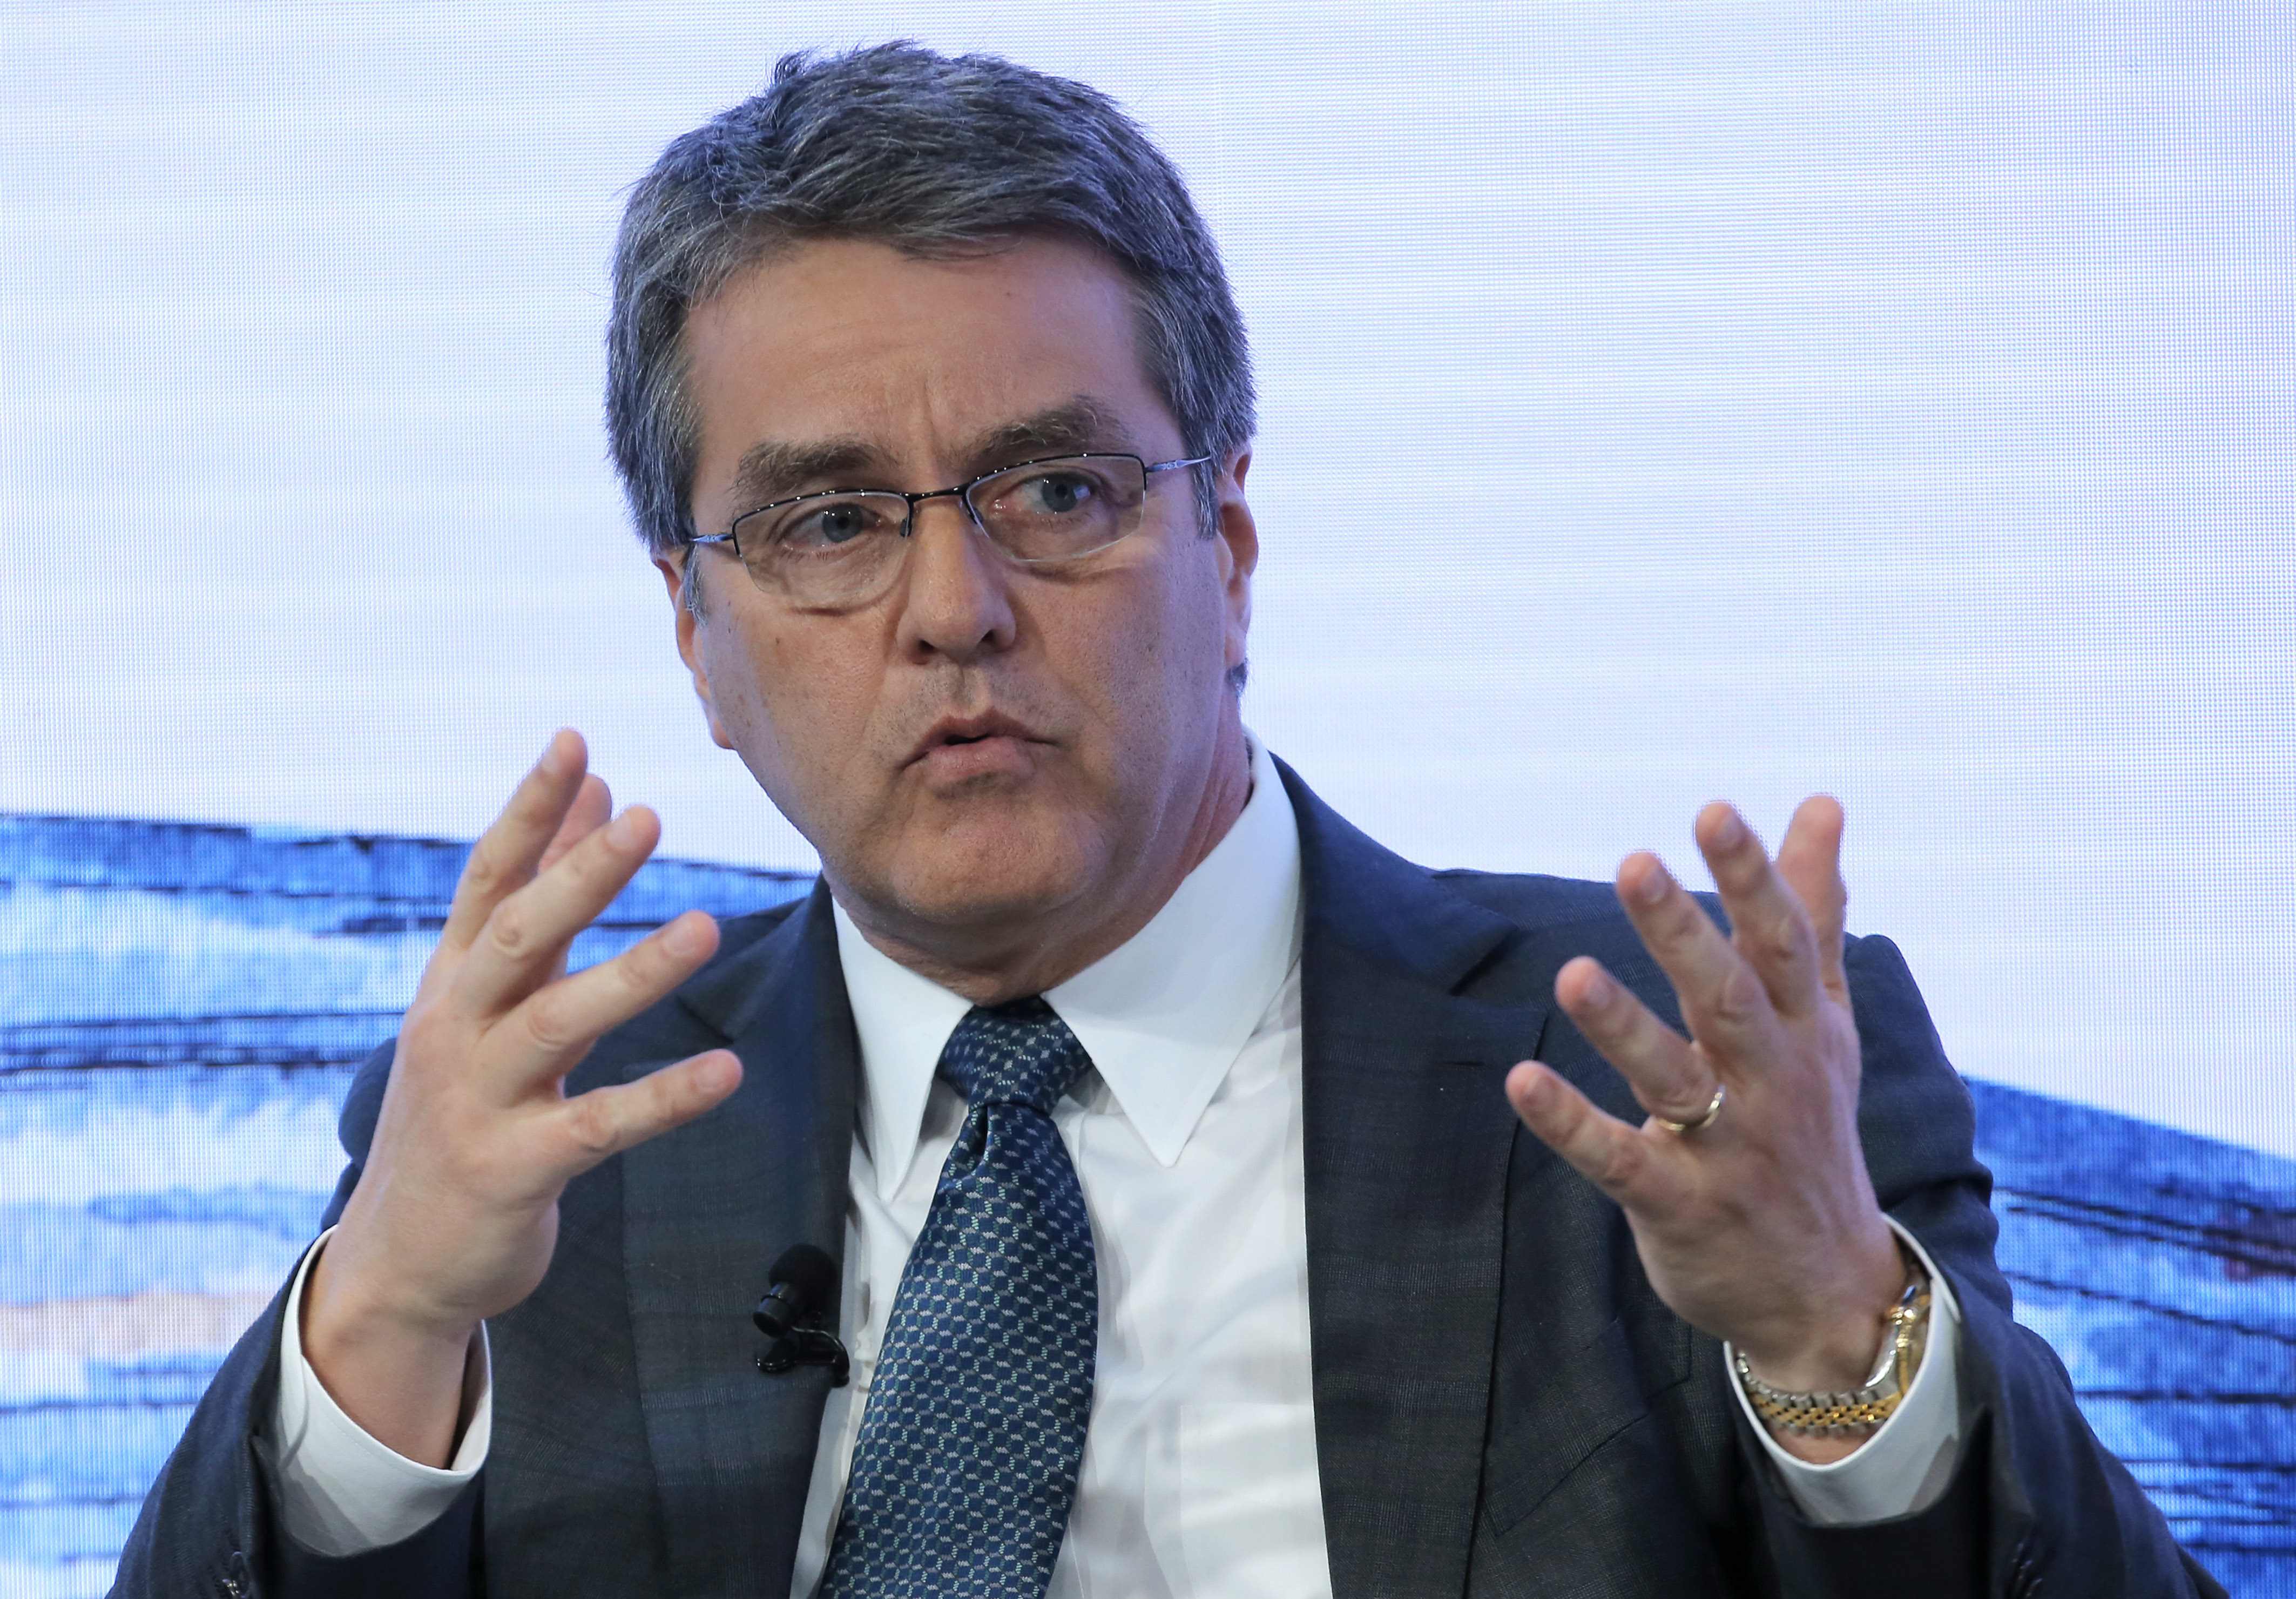 Roberto Azevedo, director general de la OMC, durante un discurso en la reunión anual del Foro Económico Mundial en Davos, Suiza (AP)